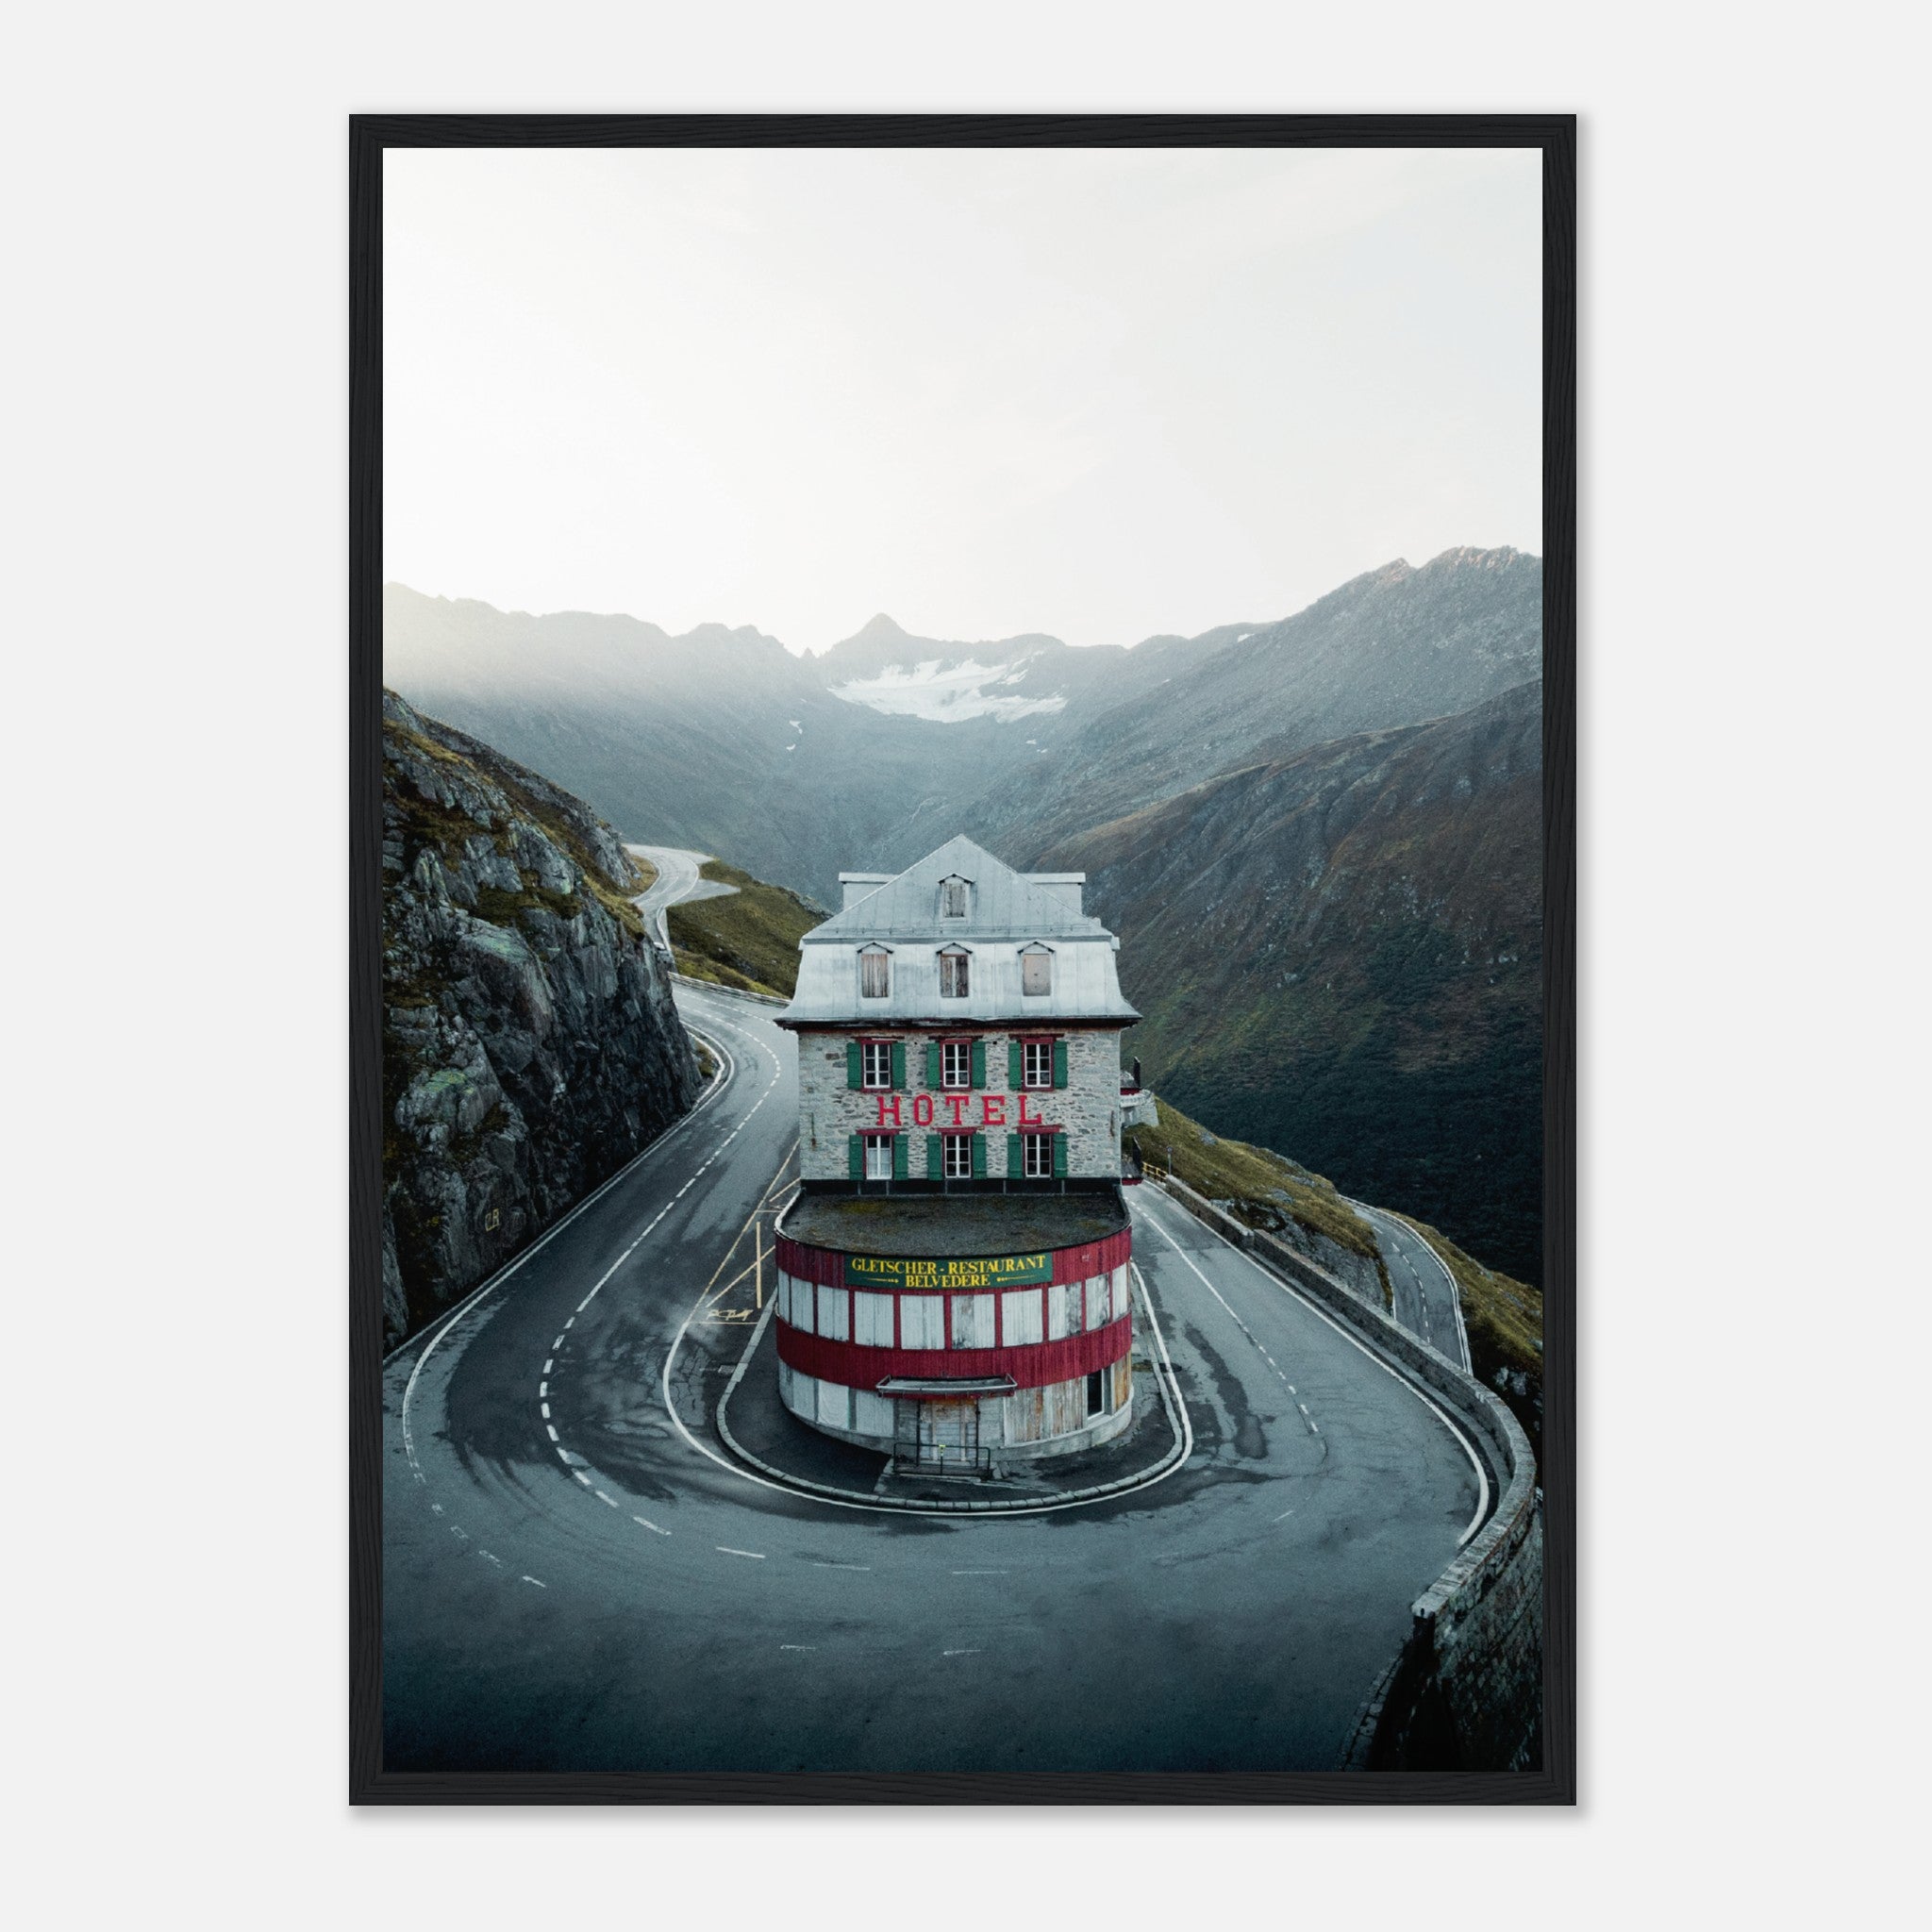 Póster Hotel Belvedere en Furkapass Suiza